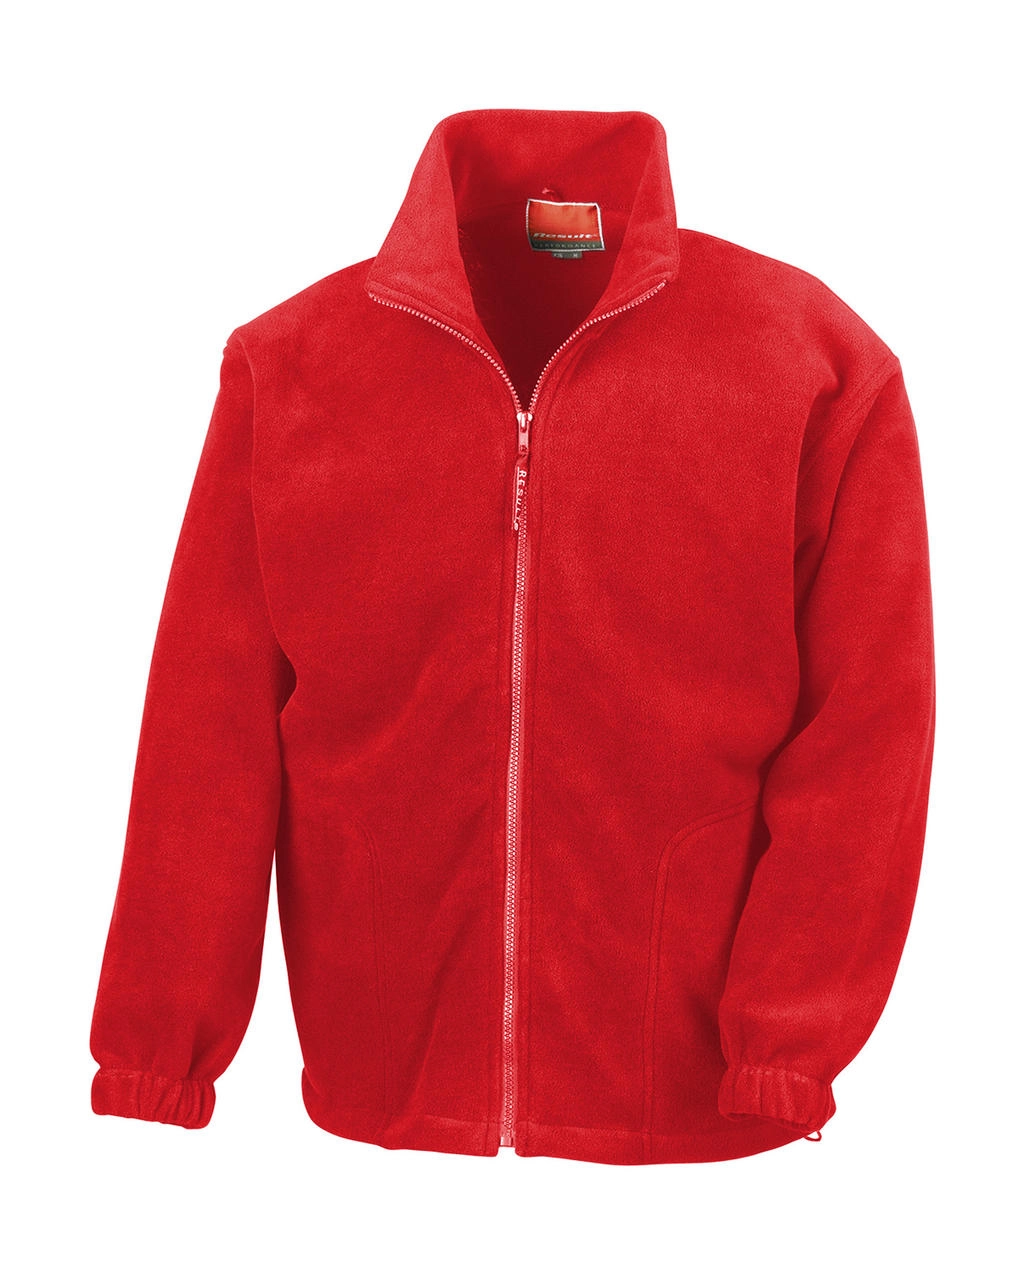 Polartherm™ Jacket zum Besticken und Bedrucken in der Farbe Red mit Ihren Logo, Schriftzug oder Motiv.